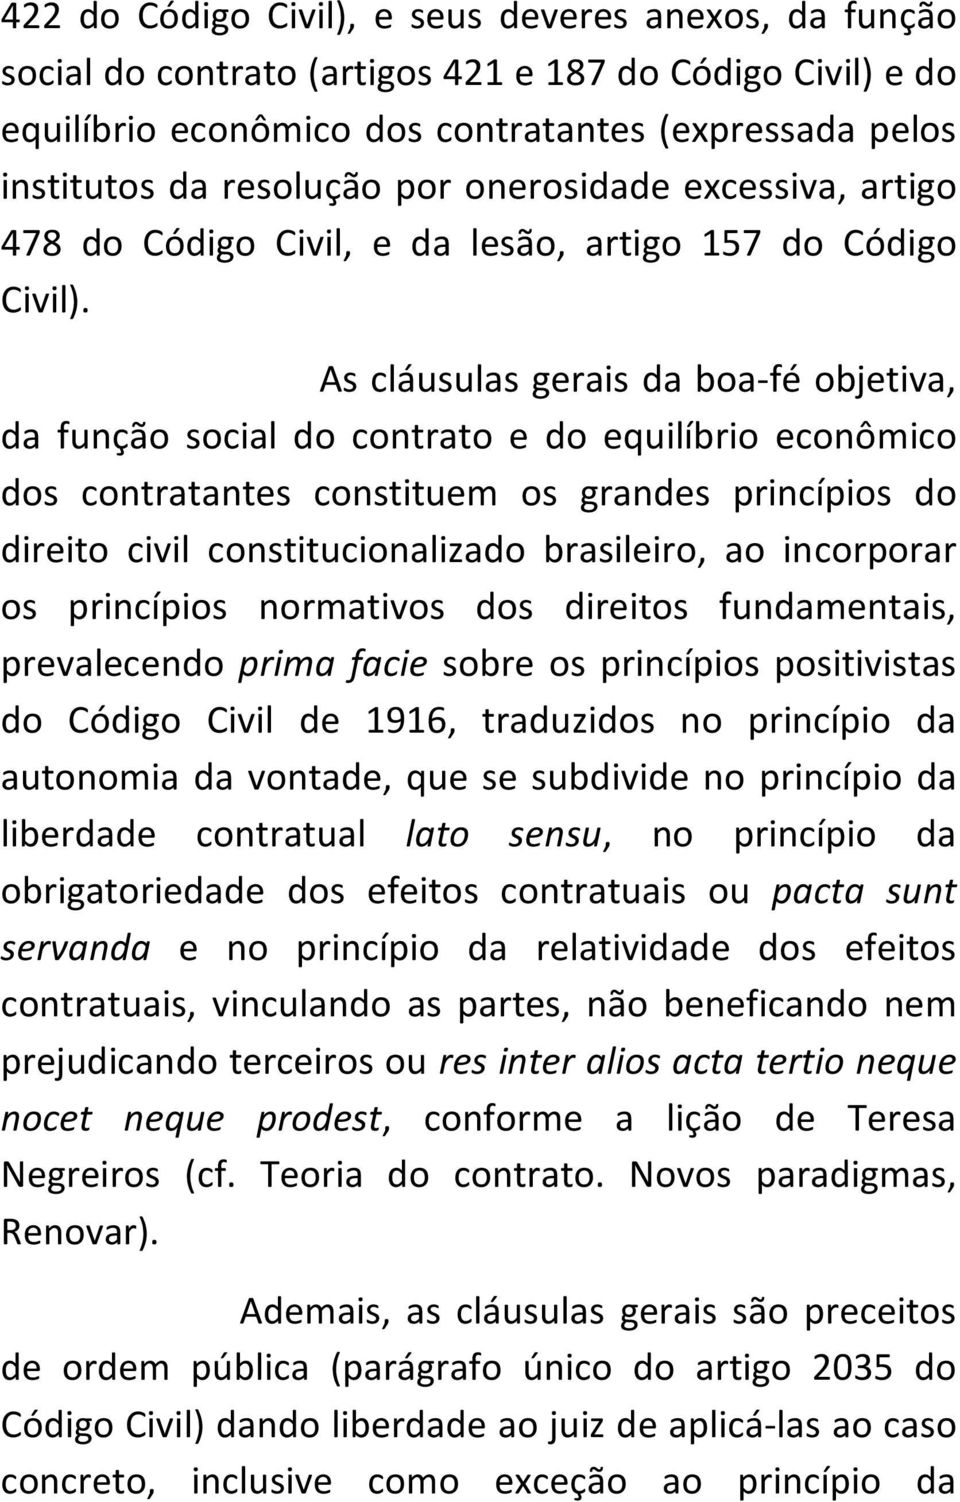 As cláusulas gerais da boa-fé objetiva, da função social do contrato e do equilíbrio econômico dos contratantes constituem os grandes princípios do direito civil constitucionalizado brasileiro, ao